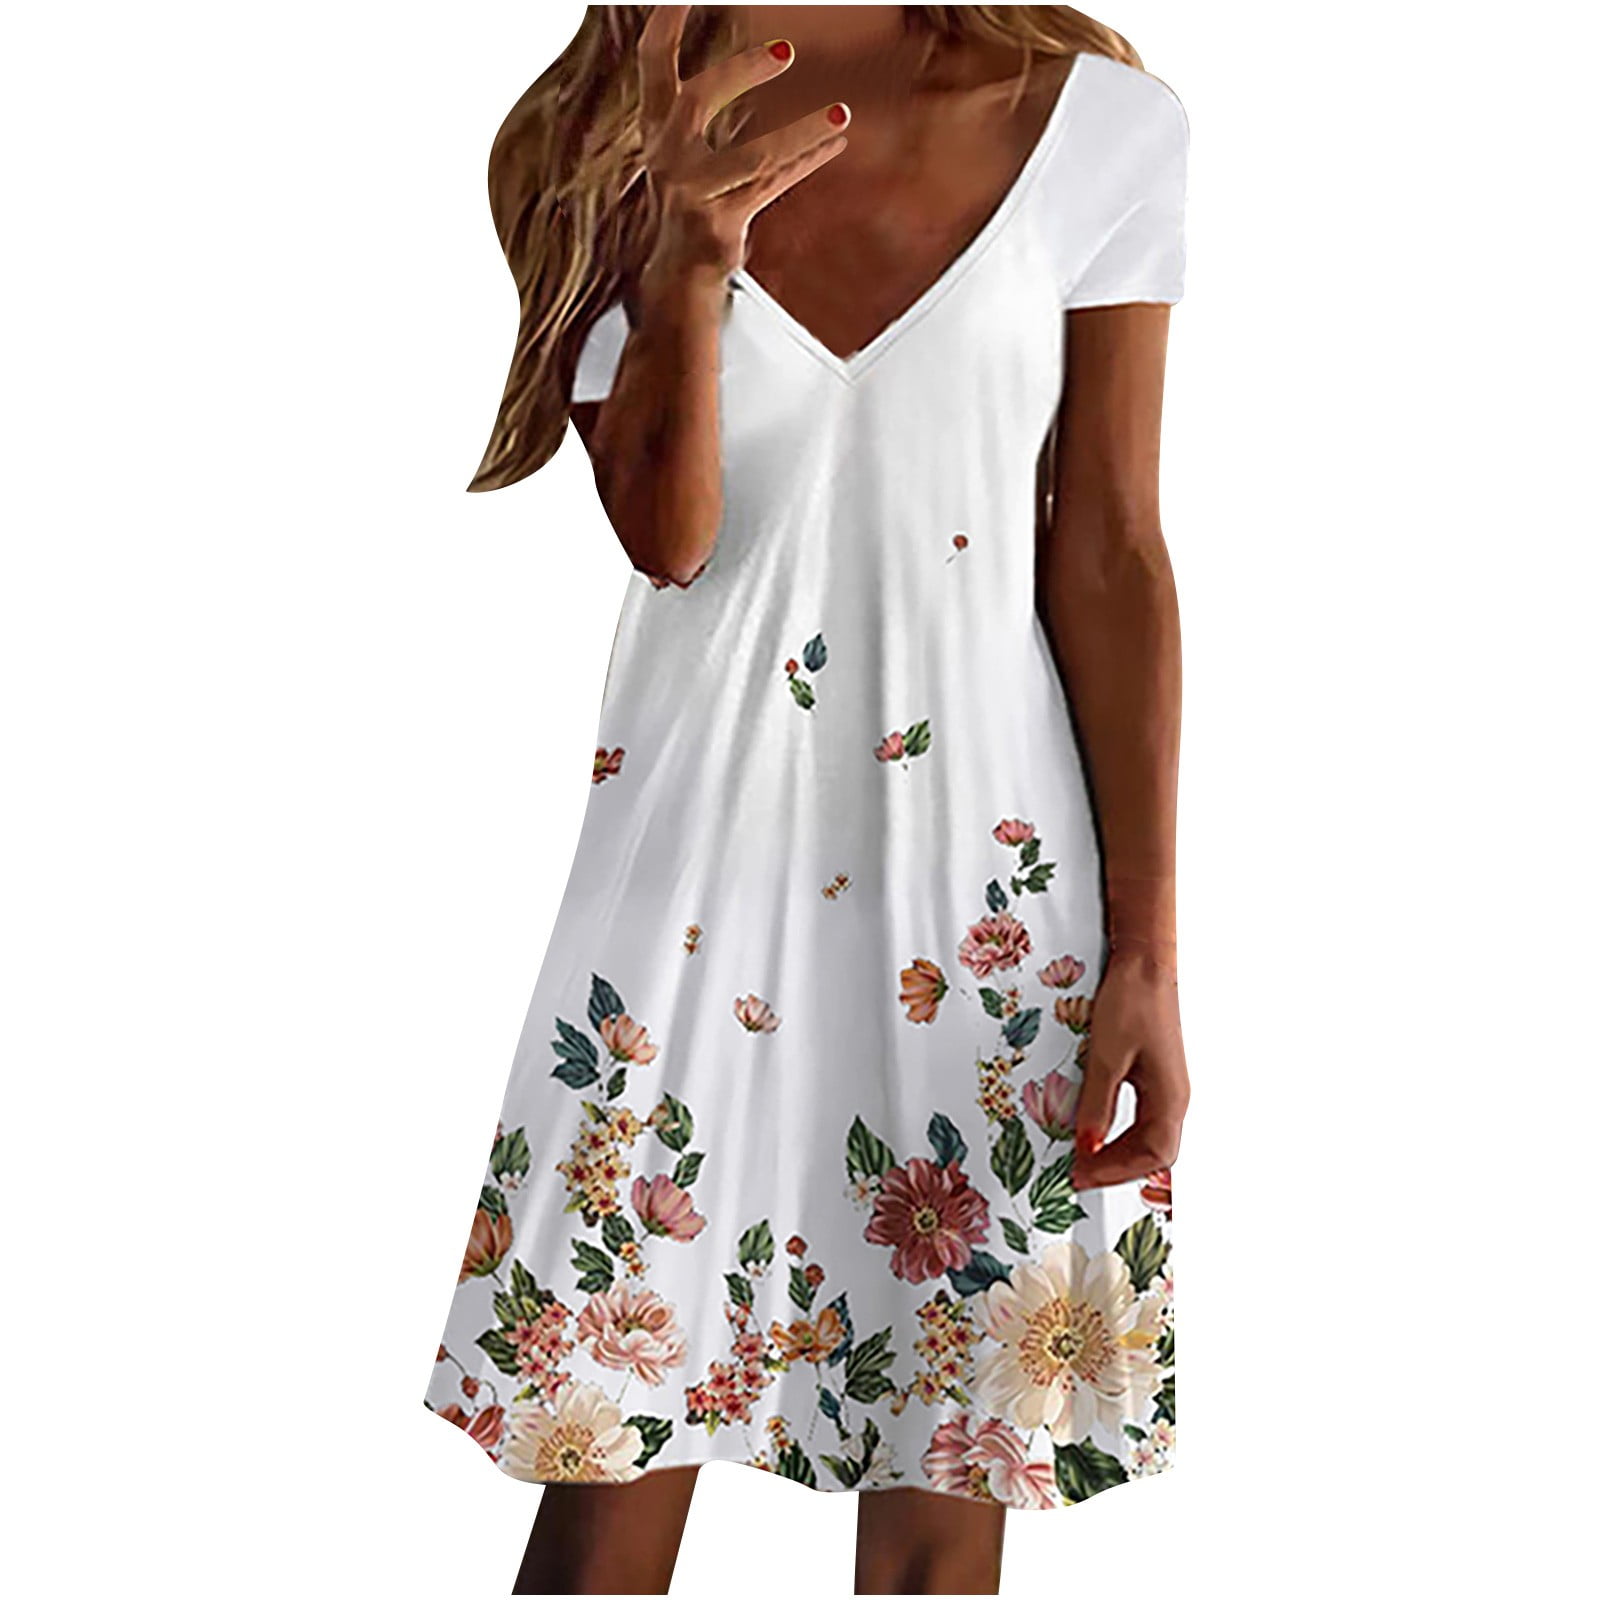 Summer Dress For Women Casual Floral Print Short Sleeve T Shirt Sun ...